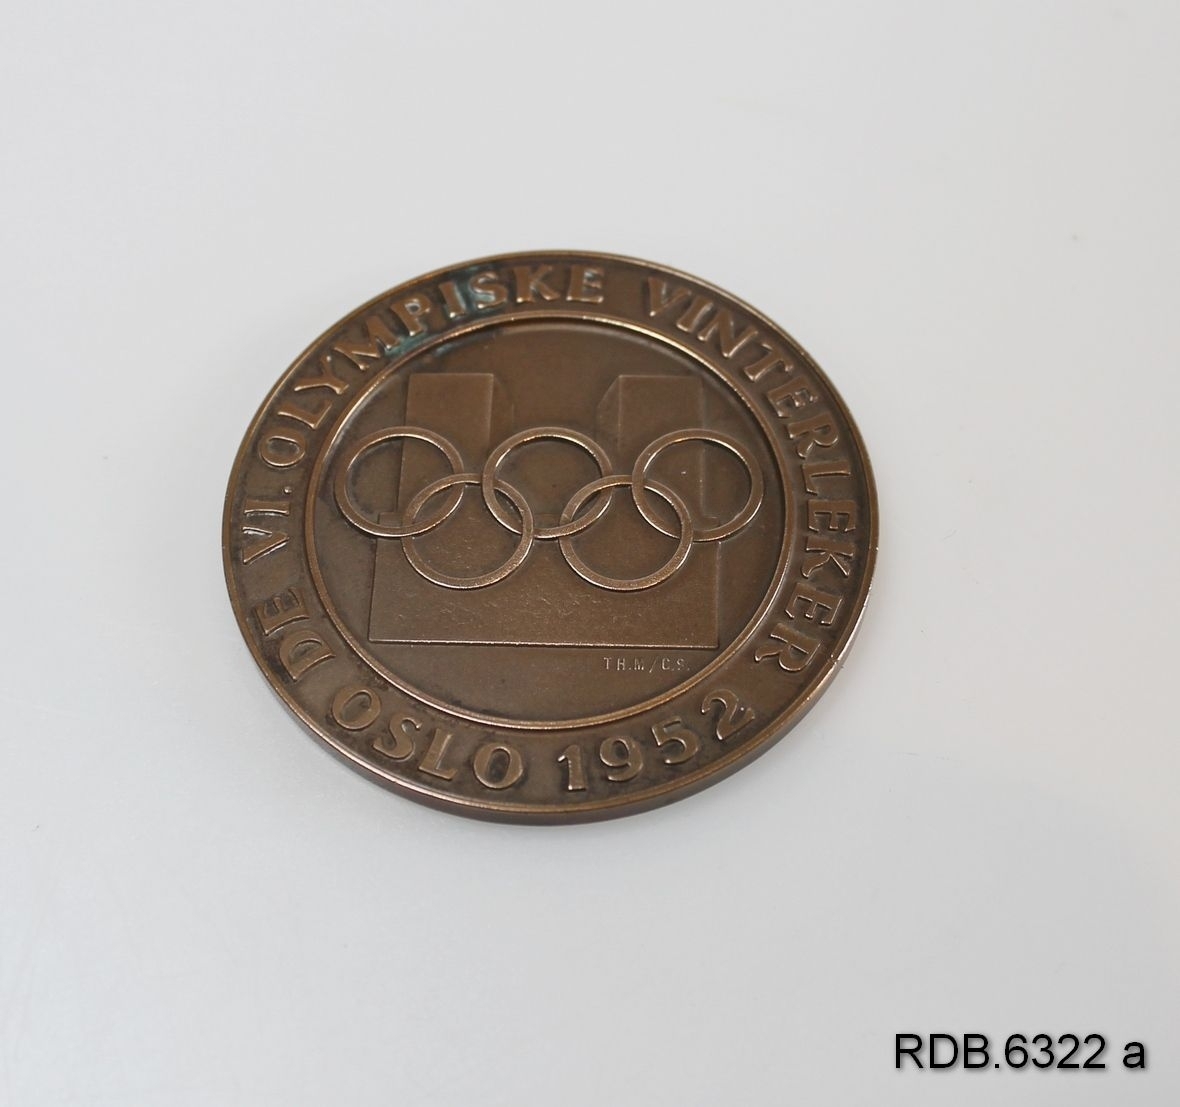 Deltakermedalje fra OL i Oslo 1952. Medaljen er rund med de olympiske ringer og påskrift på framsida. På baksida: En stor snøkrystall i midten, 3 små snøkrystaller rundt kanten pluss påskrift.